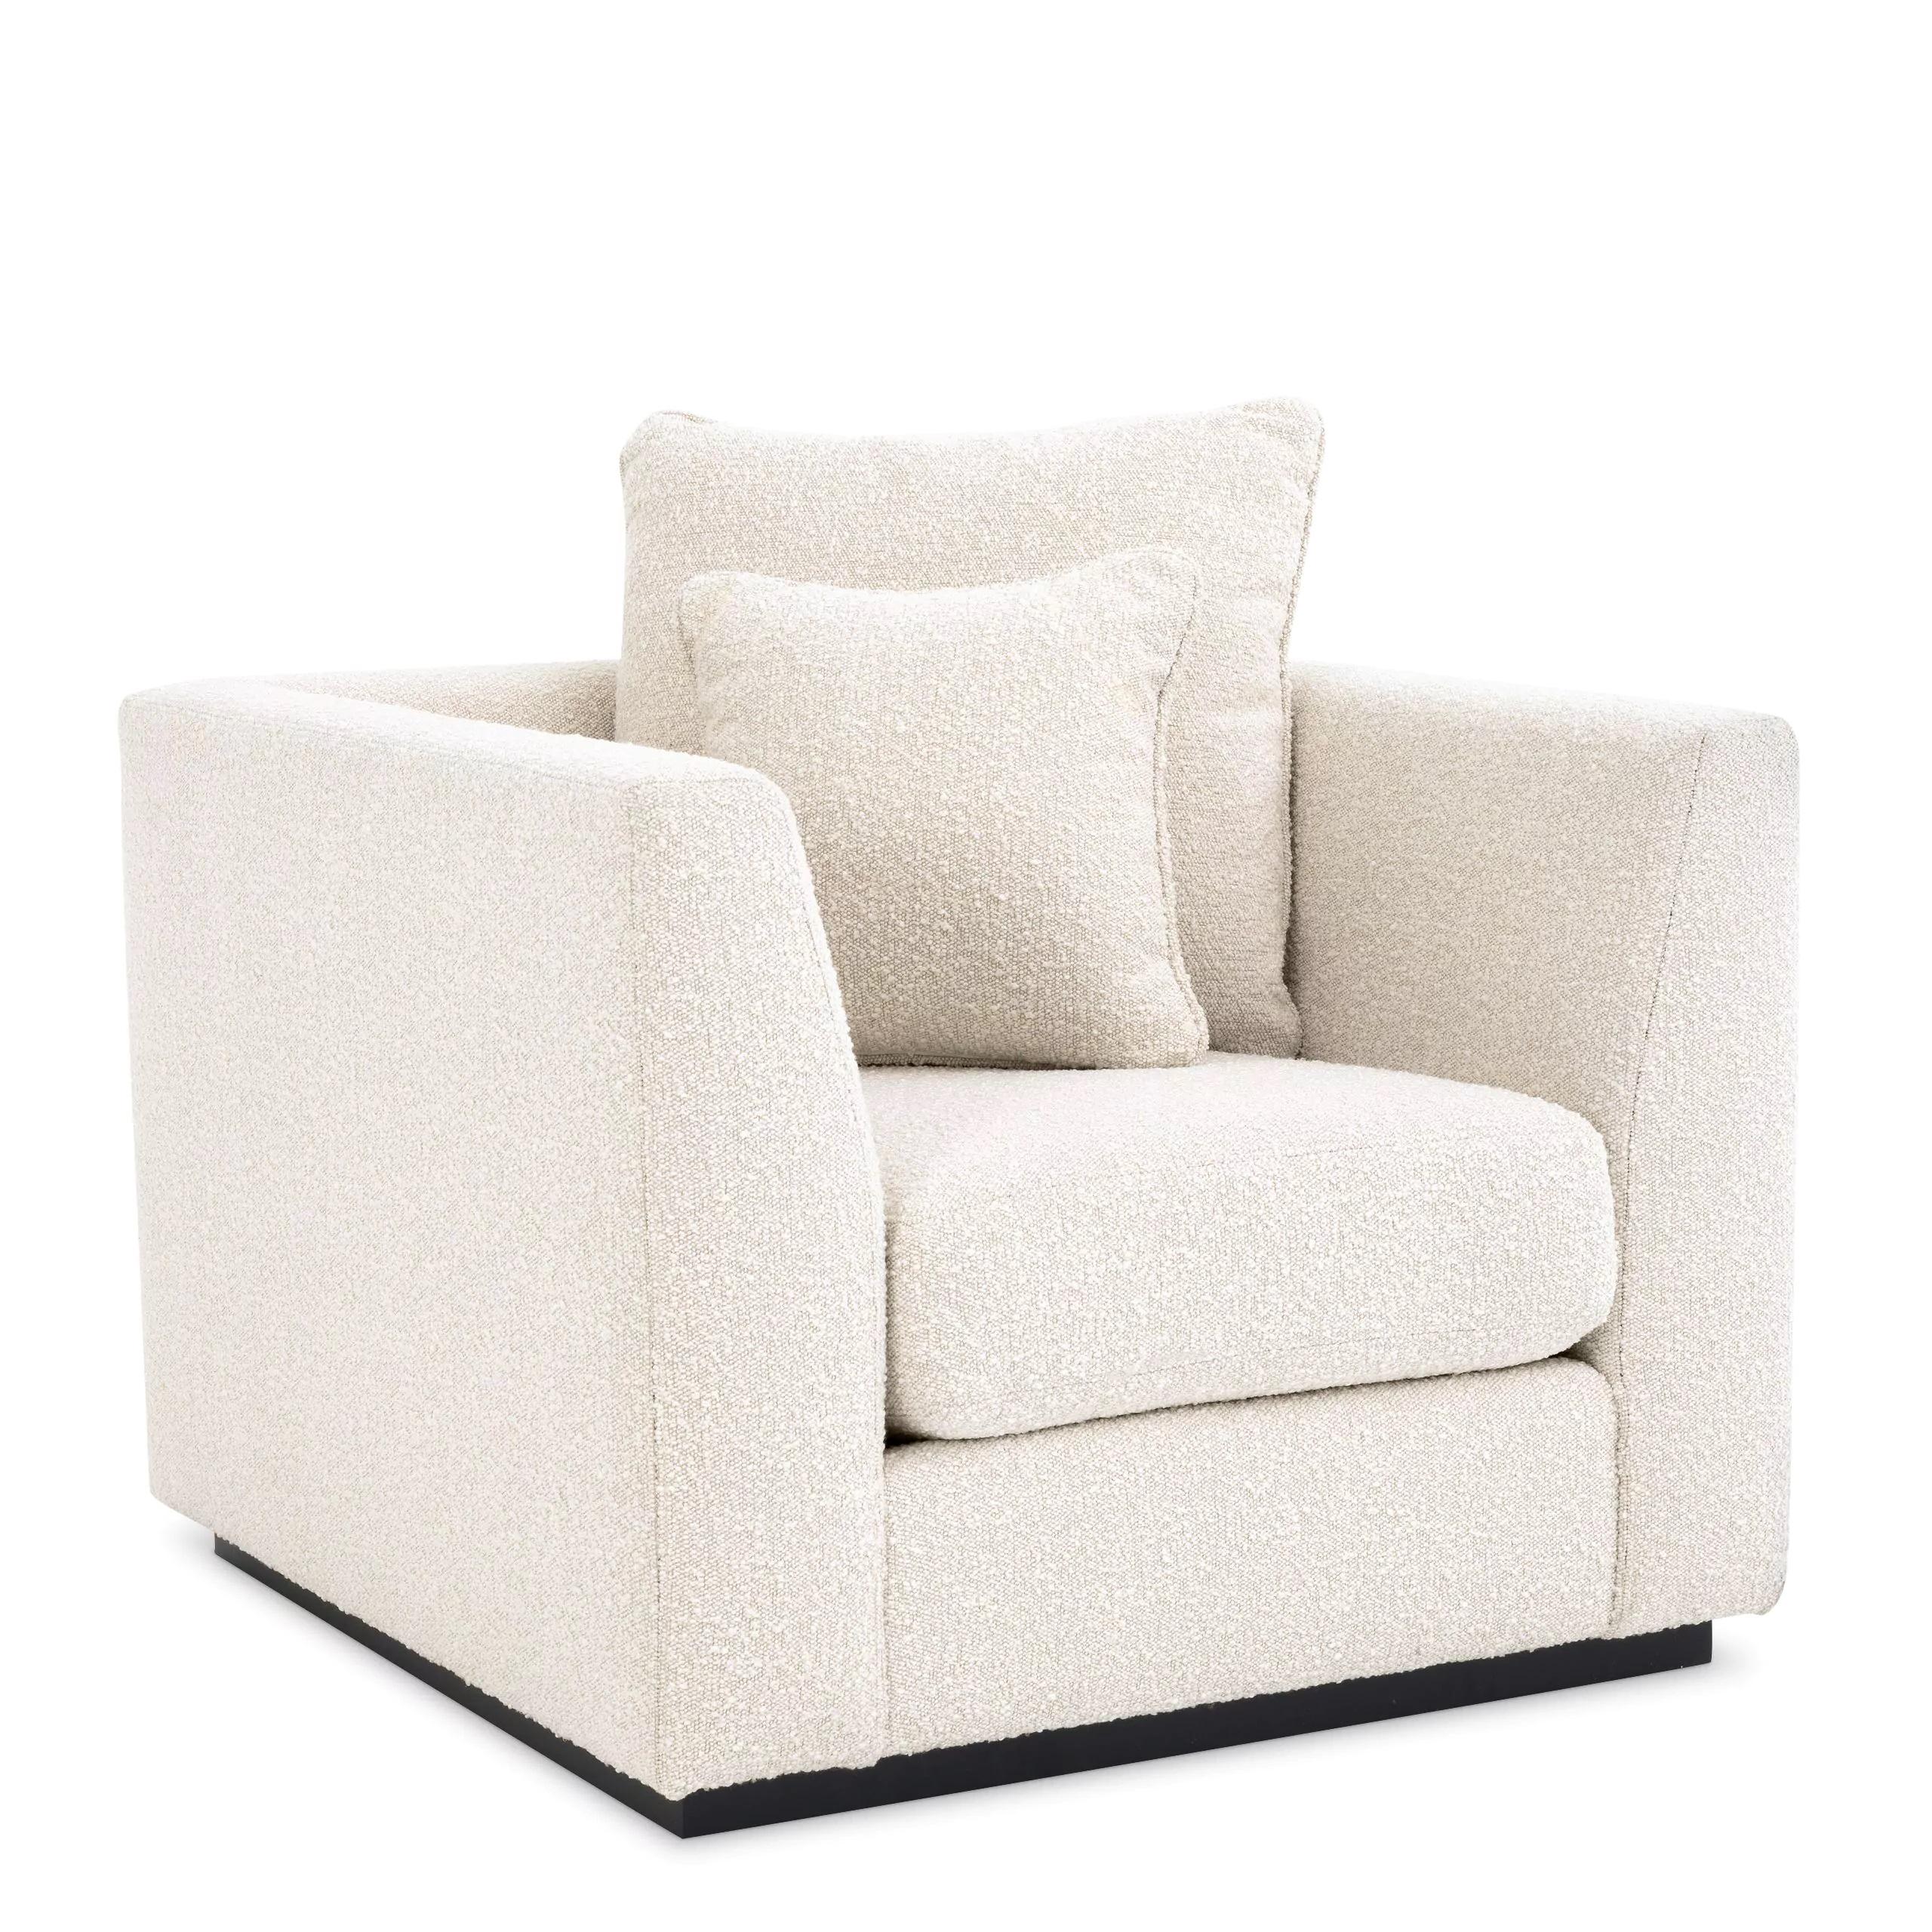 Pieds en bois noir et fauteuil en tissu bouclé beige confortable, minimaliste et dans un style fauteuil club moderne.